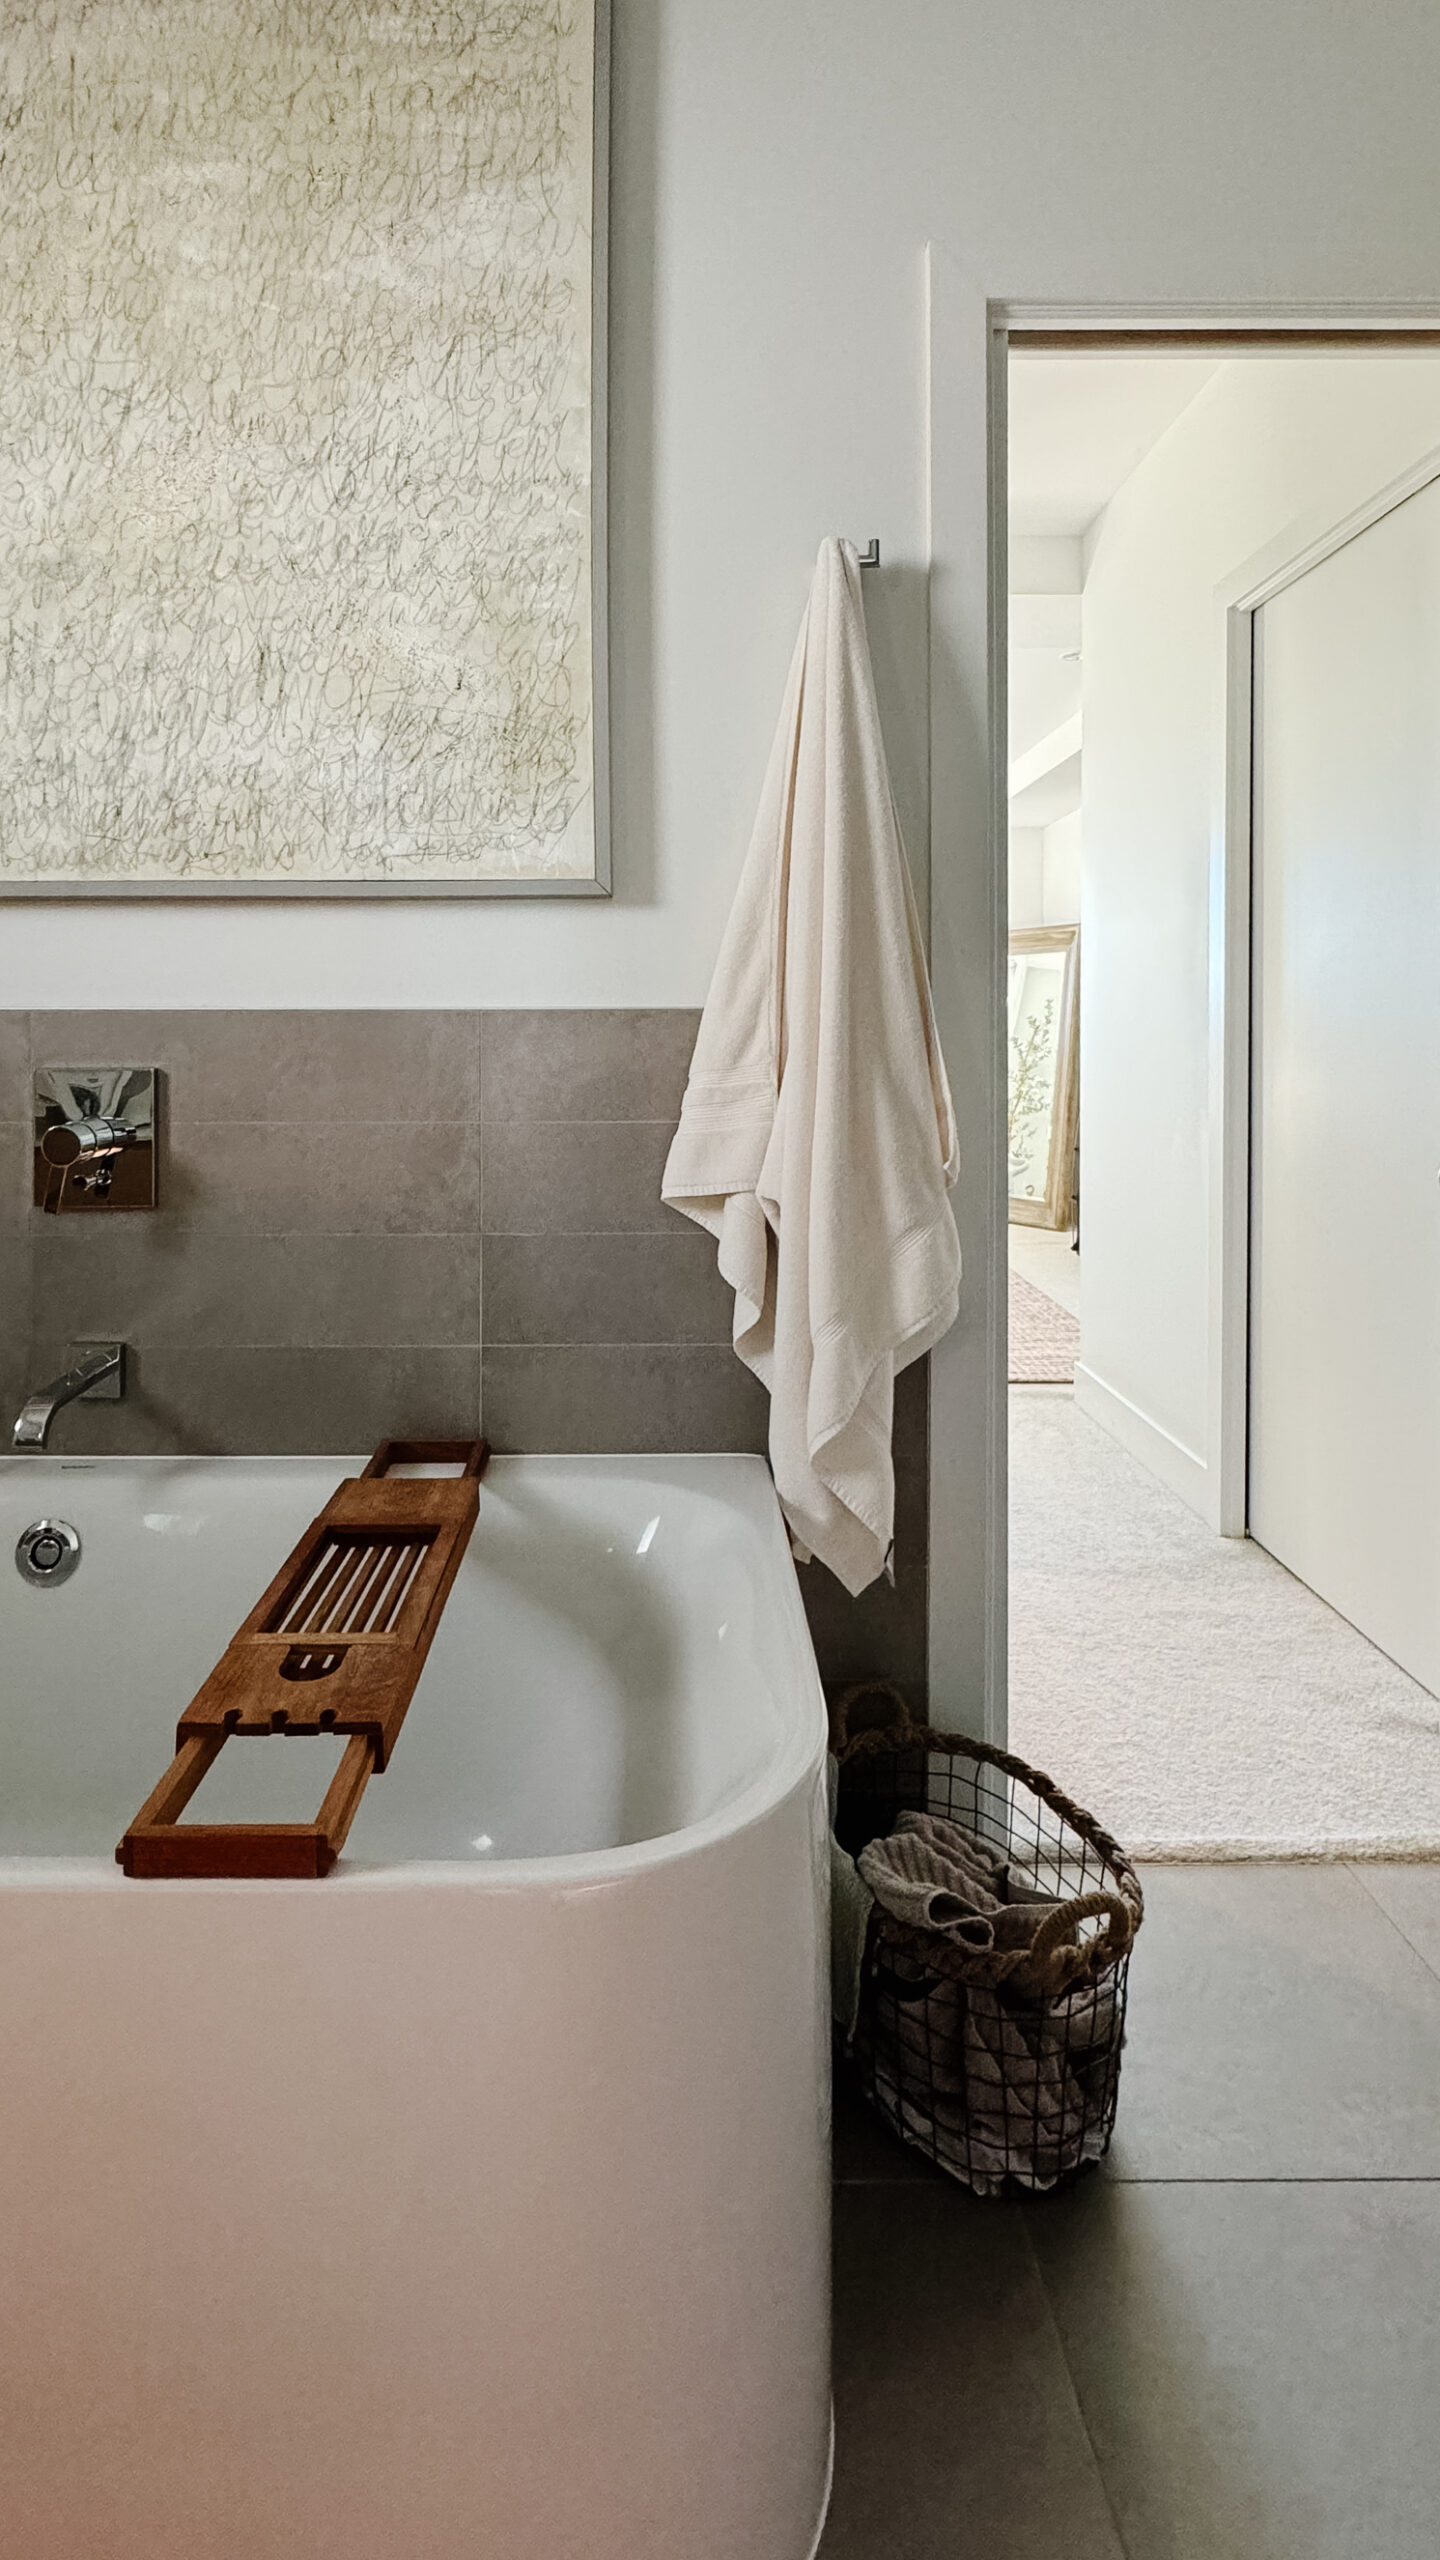 Luxury bathroom ideas. Super fluffy towel hanging by a tub